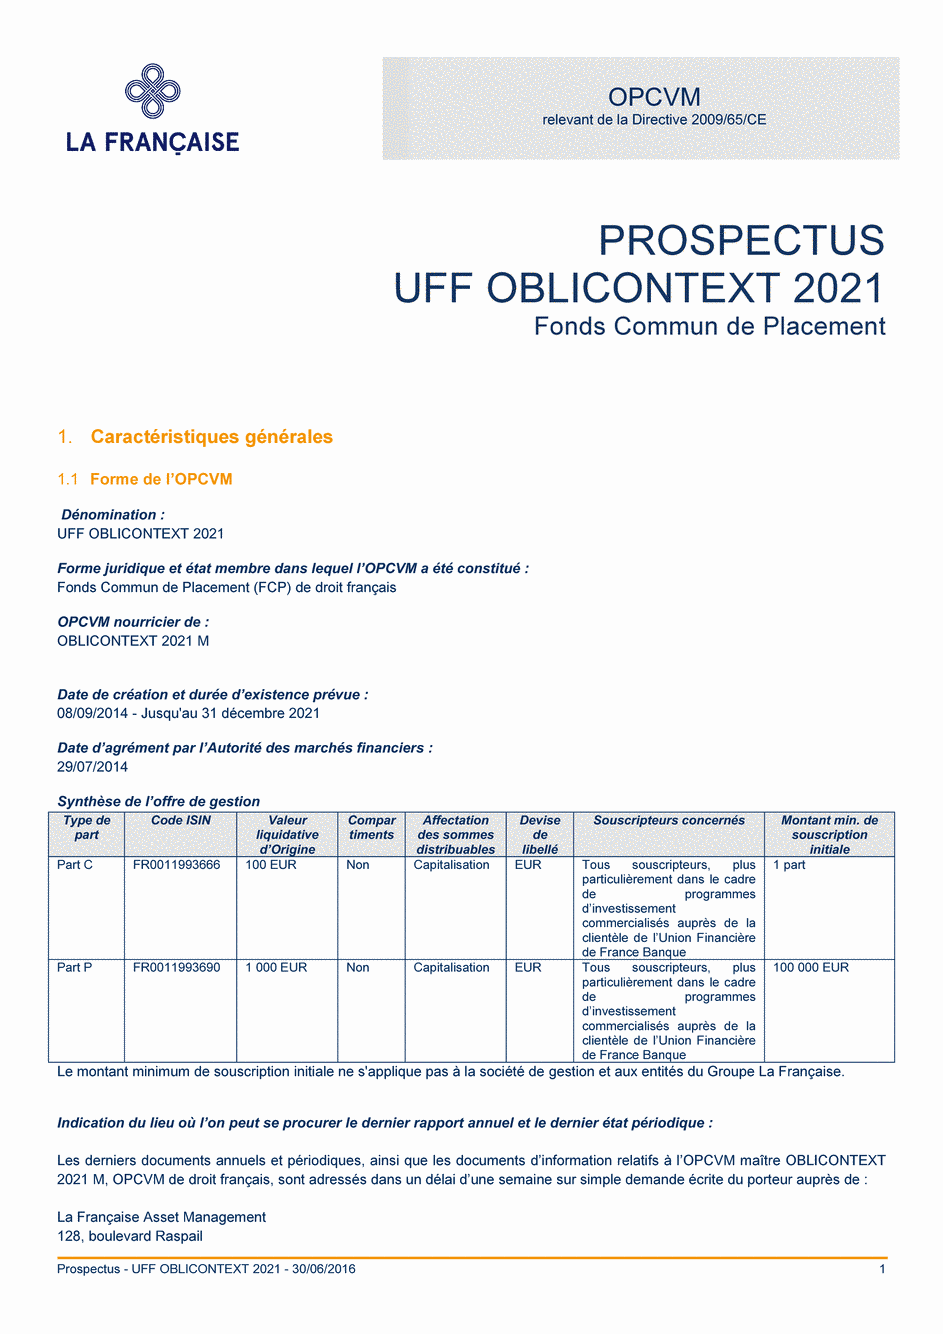 Prospectus UFF OBLICONTEXT 2021 - Part C - 30/06/2016 - Français